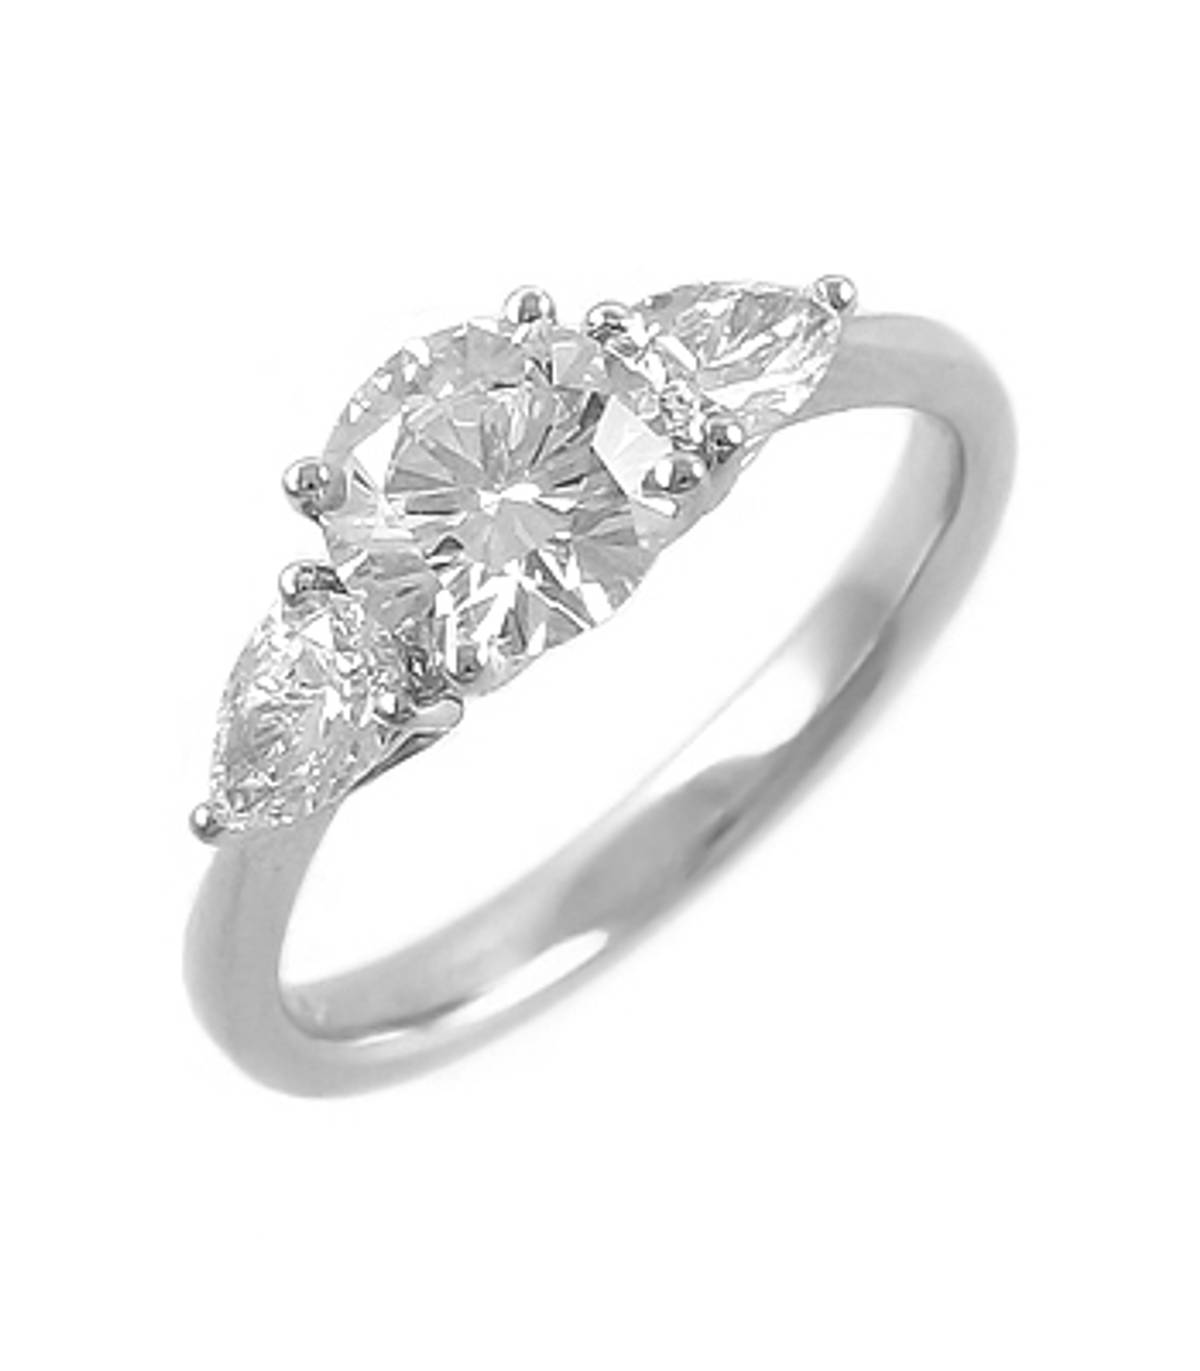  3 STONE DIAMOND RING 18k white gold 3st brilliant cut & pearshape diamond ringDETAILSbrilliant cut diamond weight 0.67ctspearshape diamond total weight 0.41cts